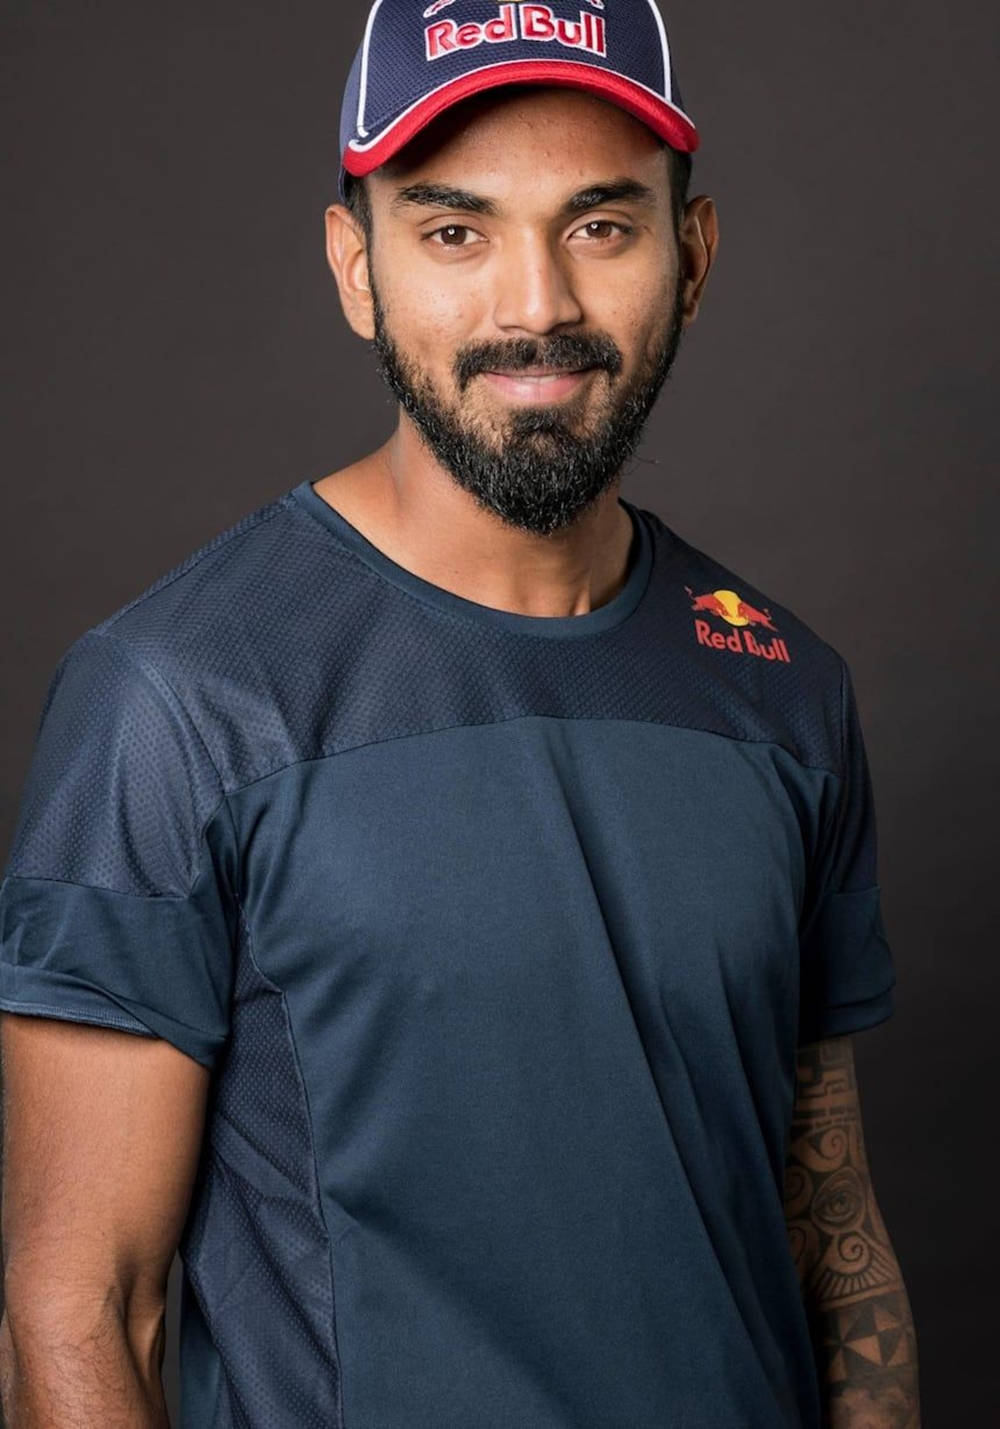 Kl Rahul Smiling For Red Bull Wallpaper